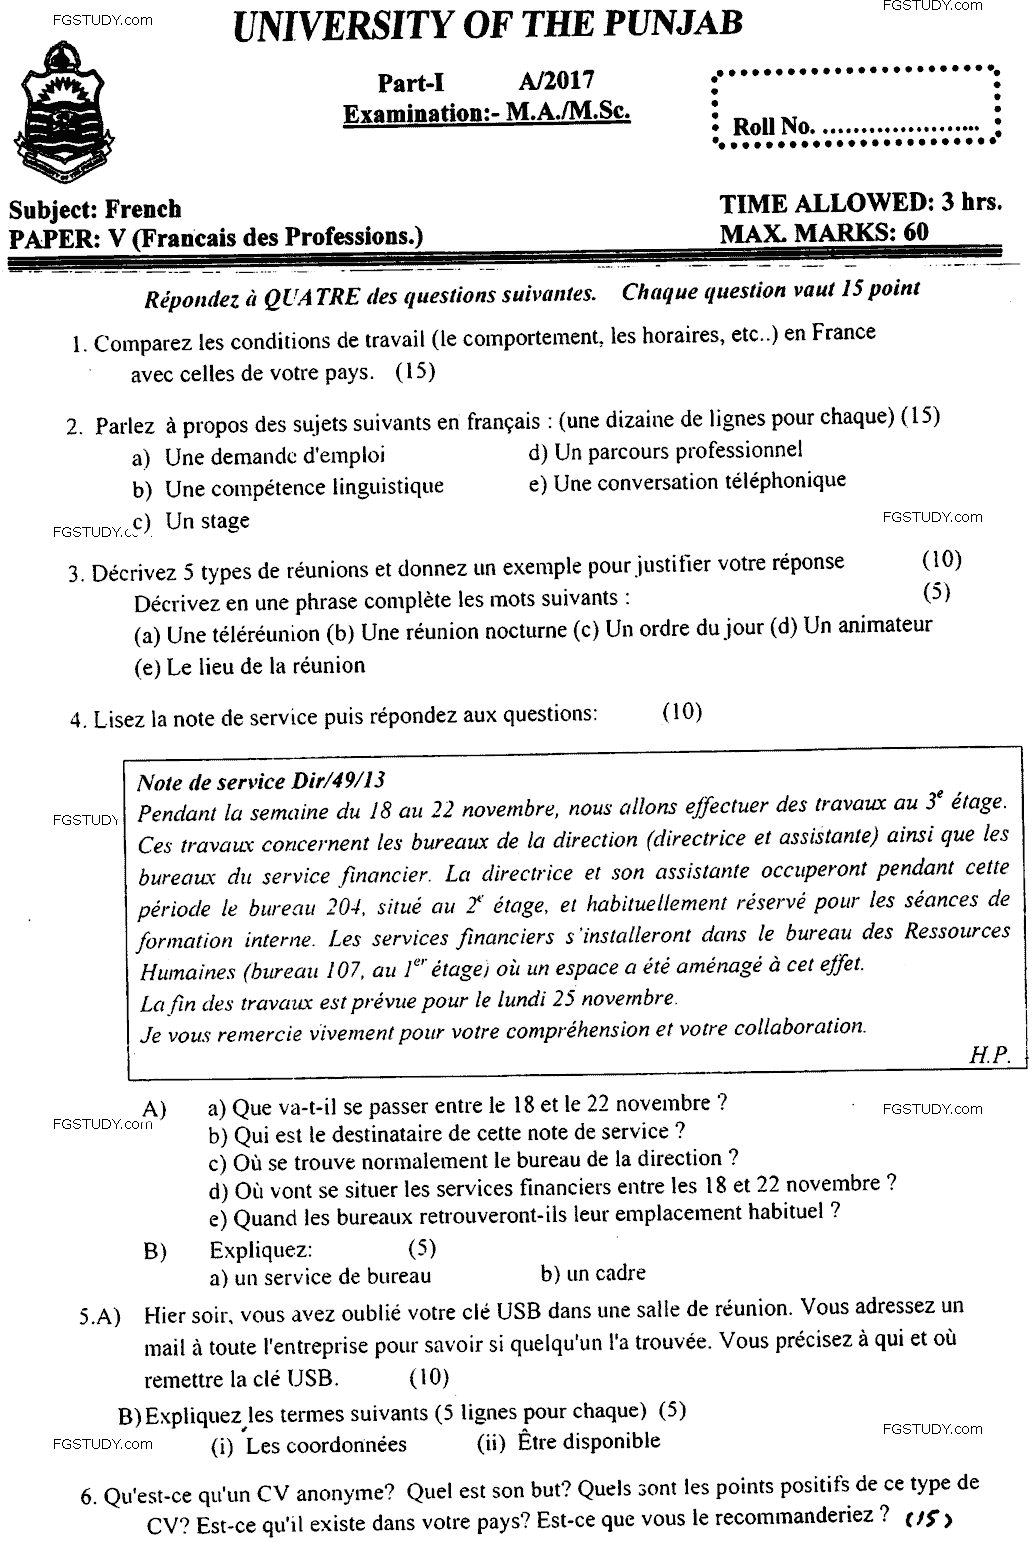 MA Part 1 French Francais Des Professions Past Paper 2017 Punjab University